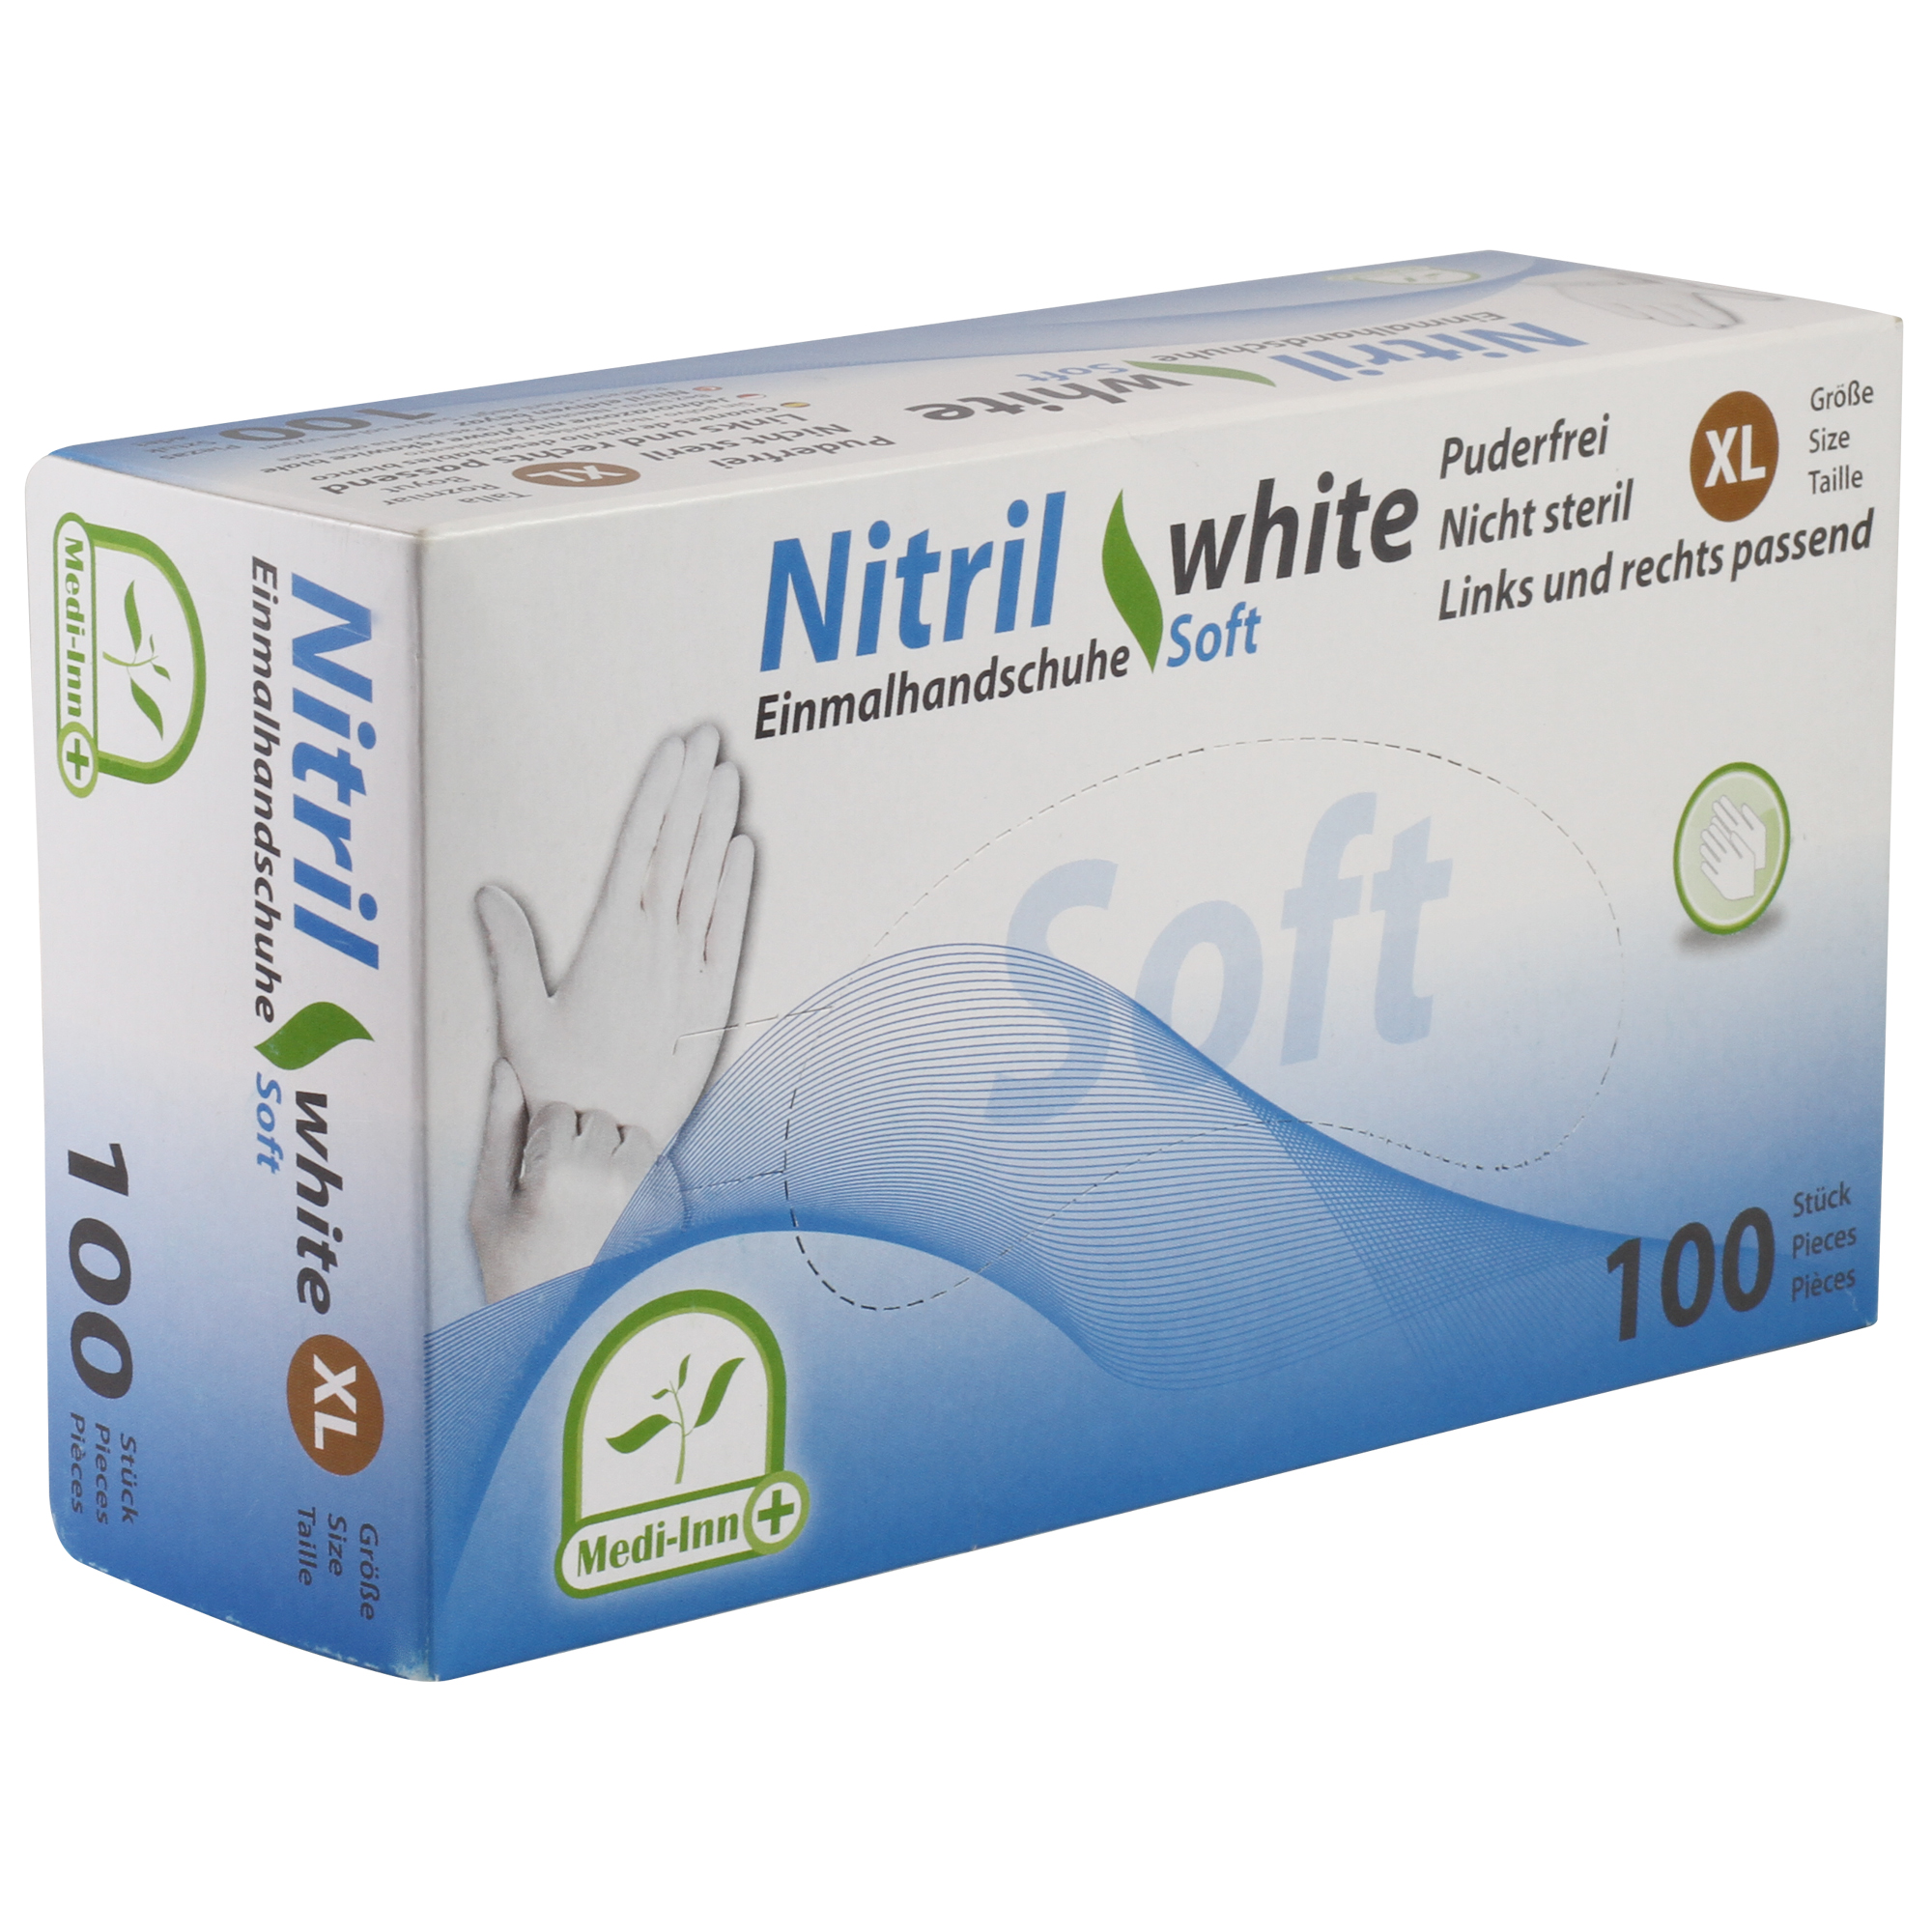 Medi-Inn Nitril Einmalhandschuhe white soft